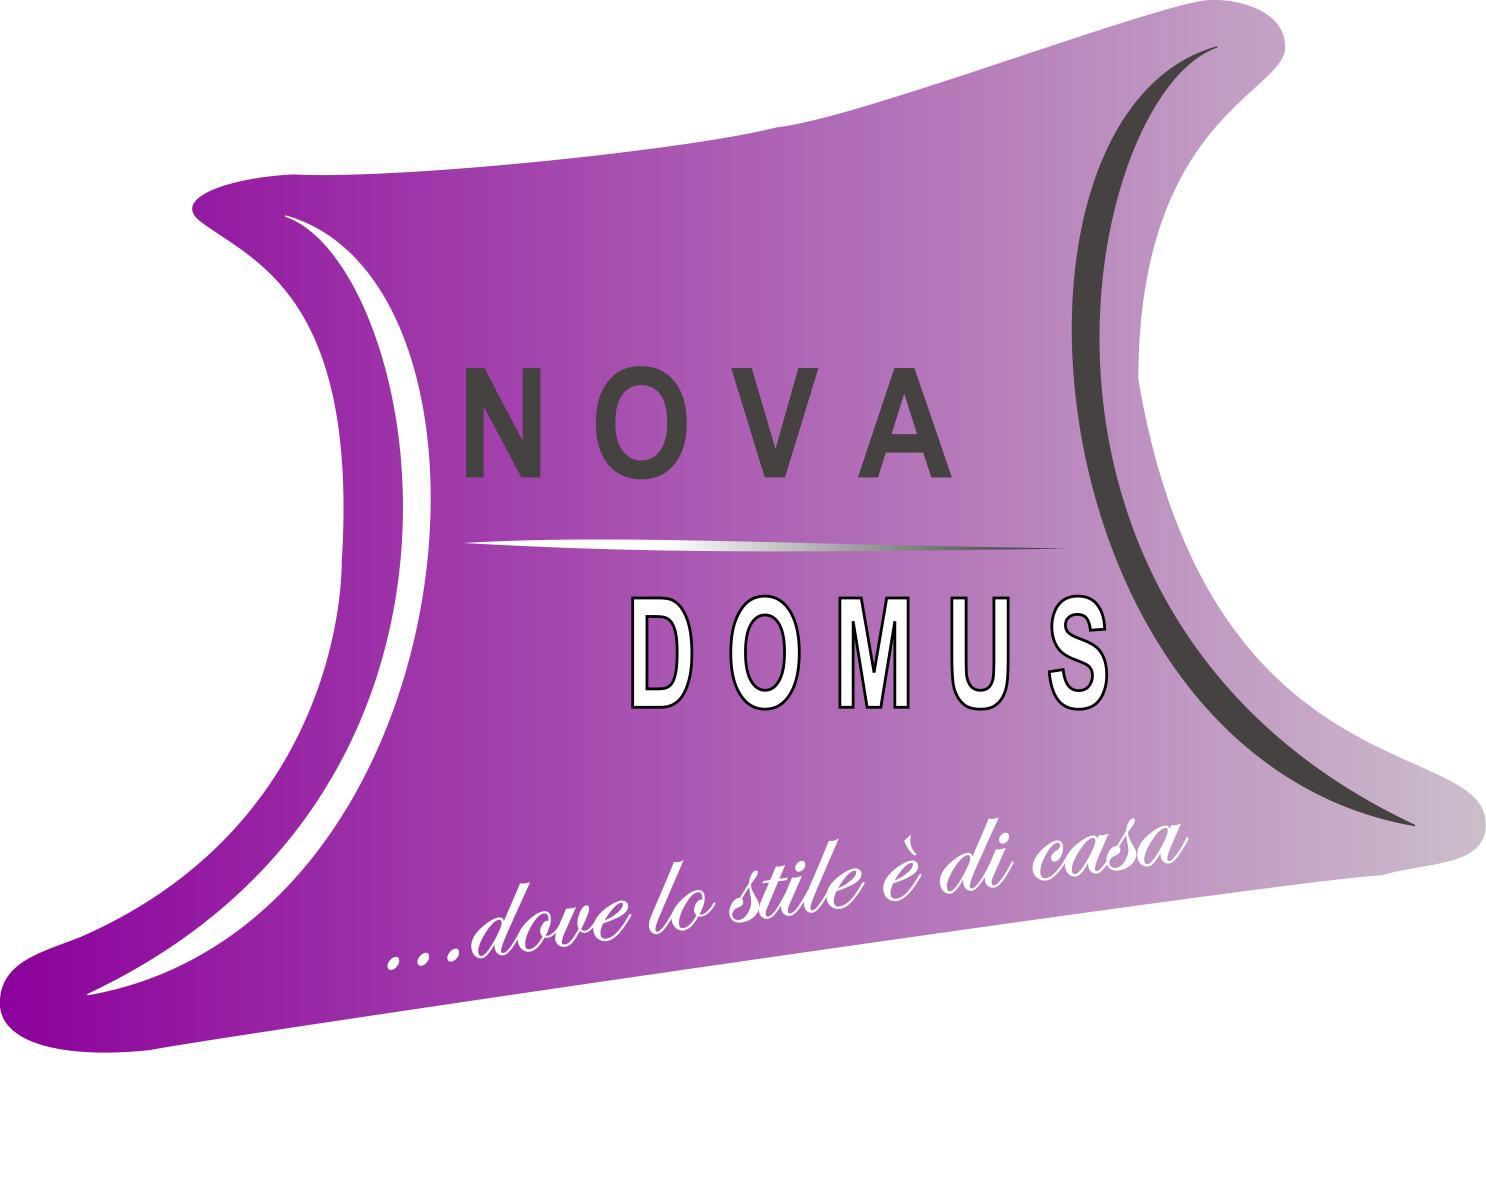 Nova Domus... dove lo stile  di casa